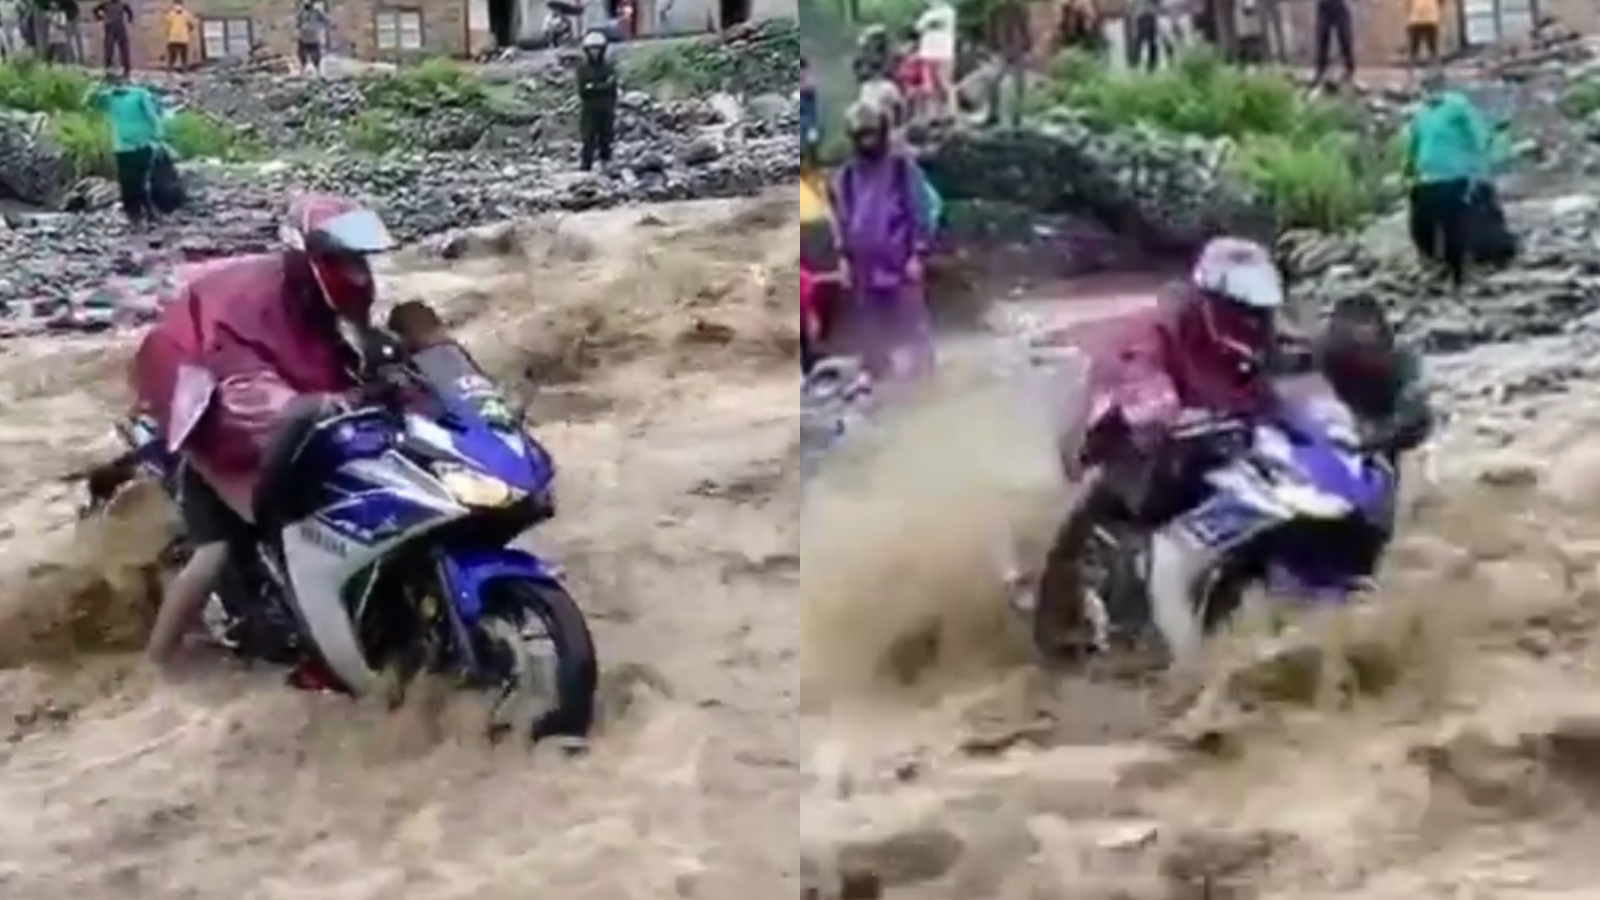 Wadidaw, Viral Pemotor Yamaha R15 Nekat Terjang Banjir, Endingnya Mengejutkan